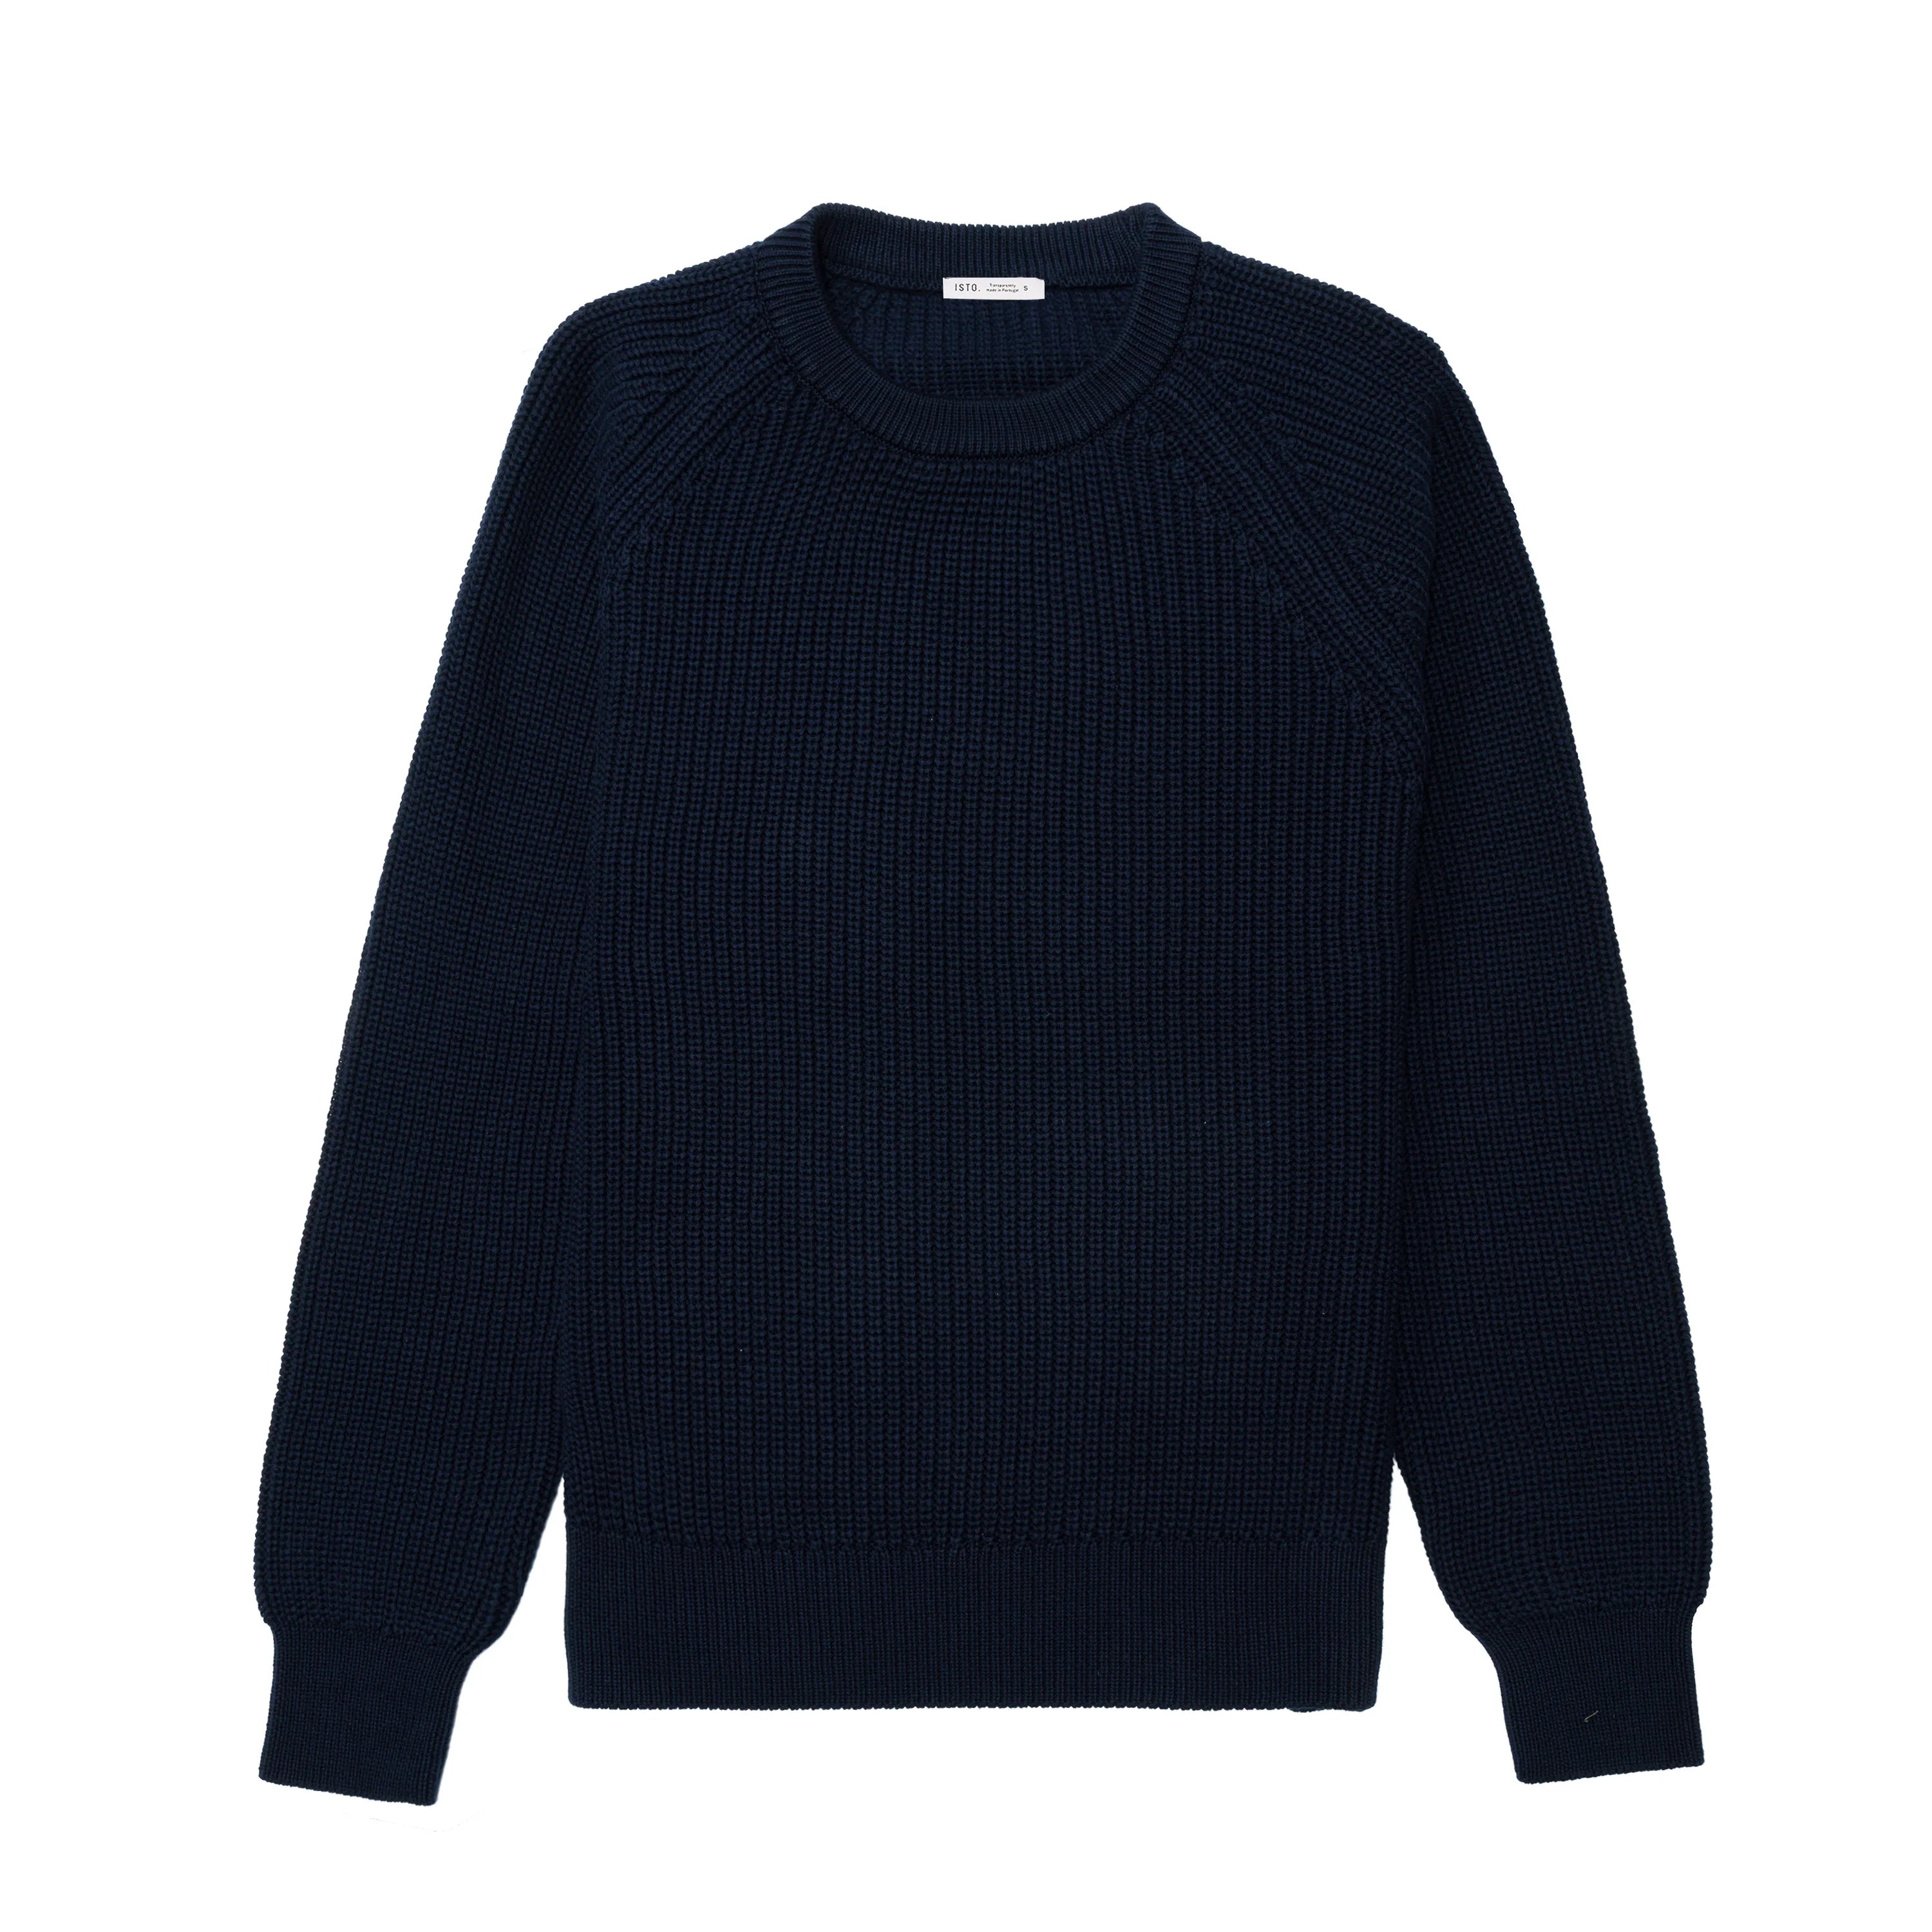 C.E cotton wide short knit